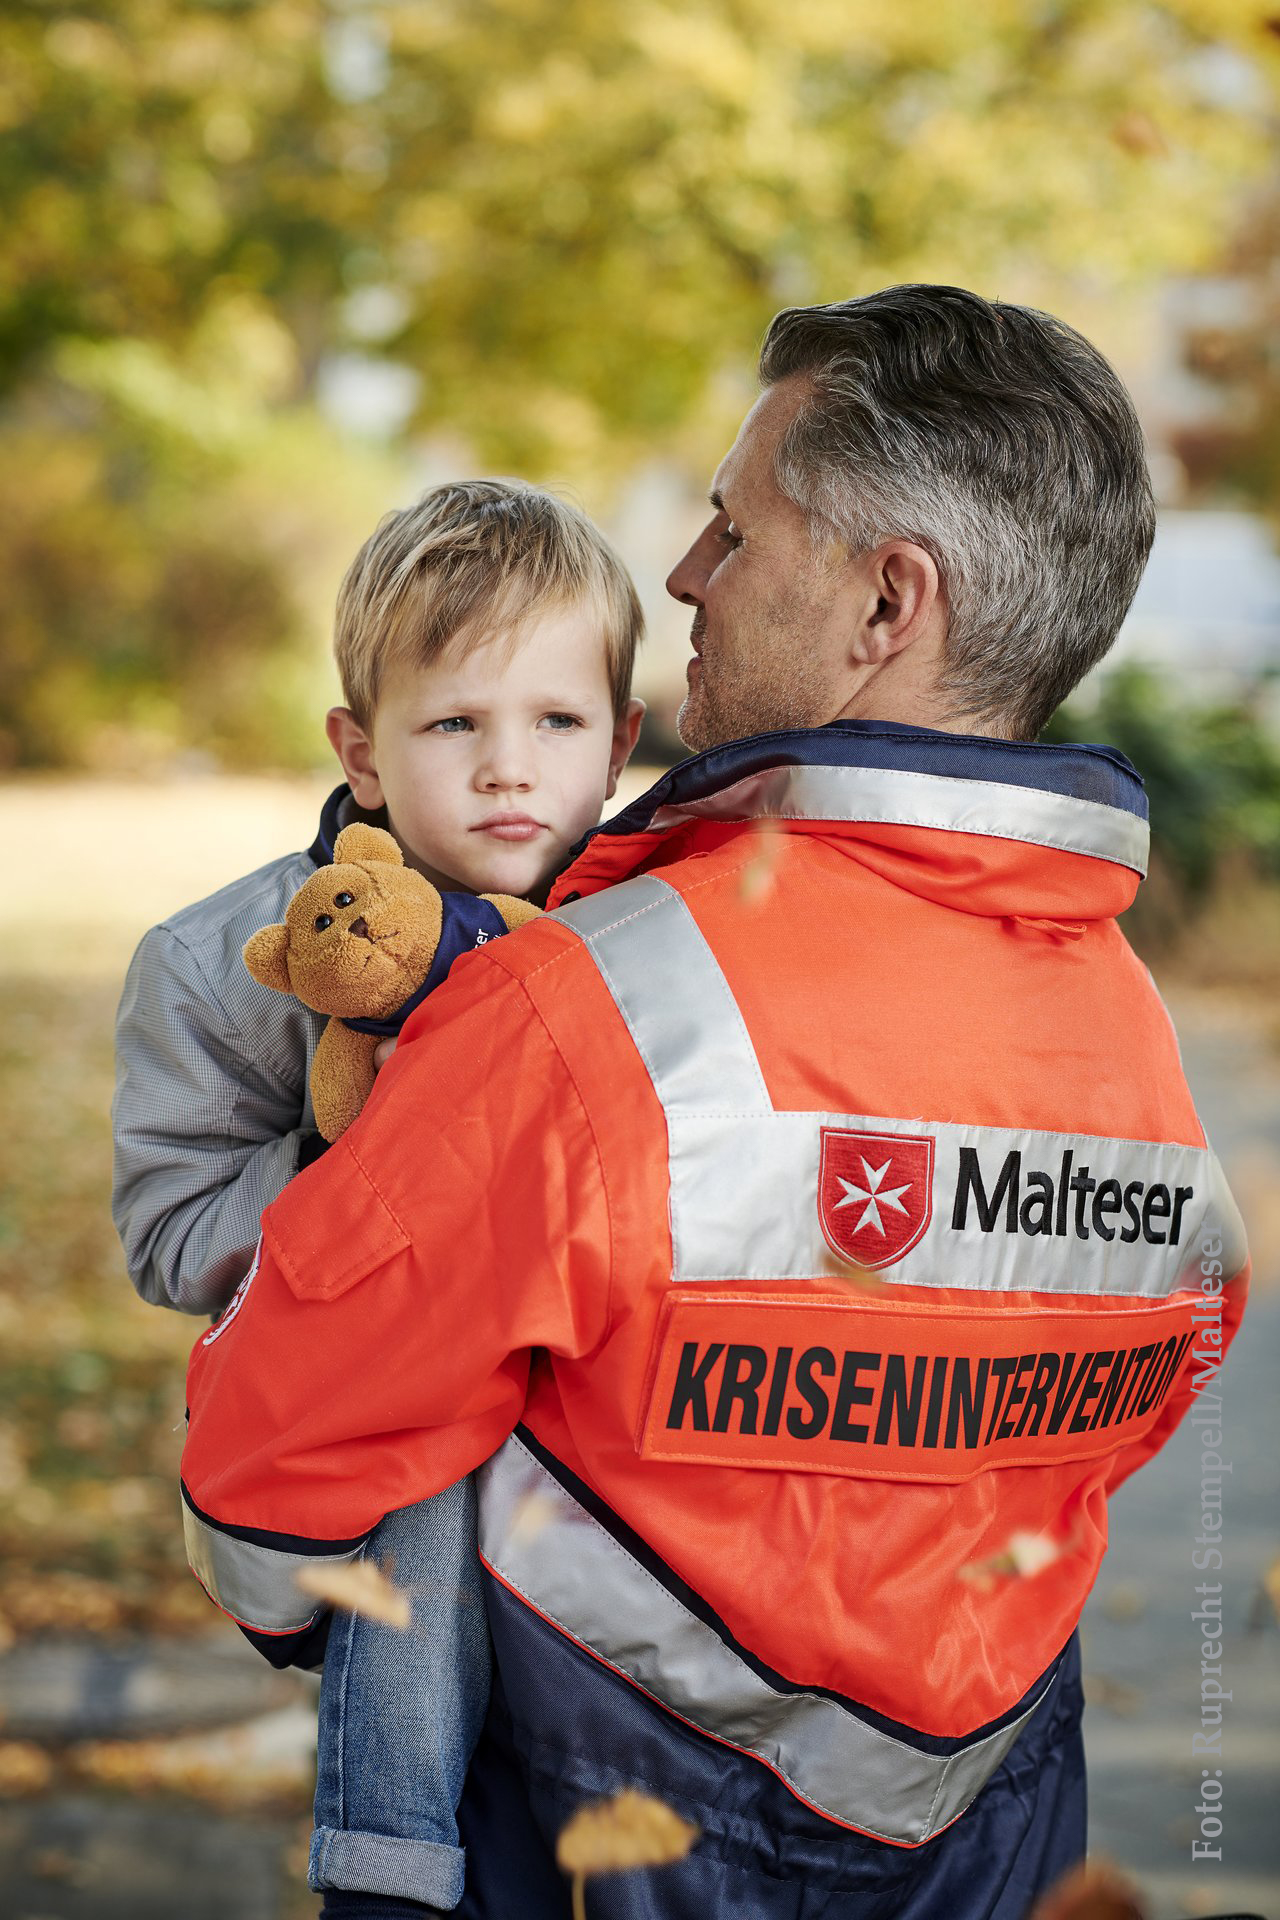 Die sogenannten Kriseninterventionsteams (KIT) sind ein Bestandteil des Rettungsdienstes der Malteser.